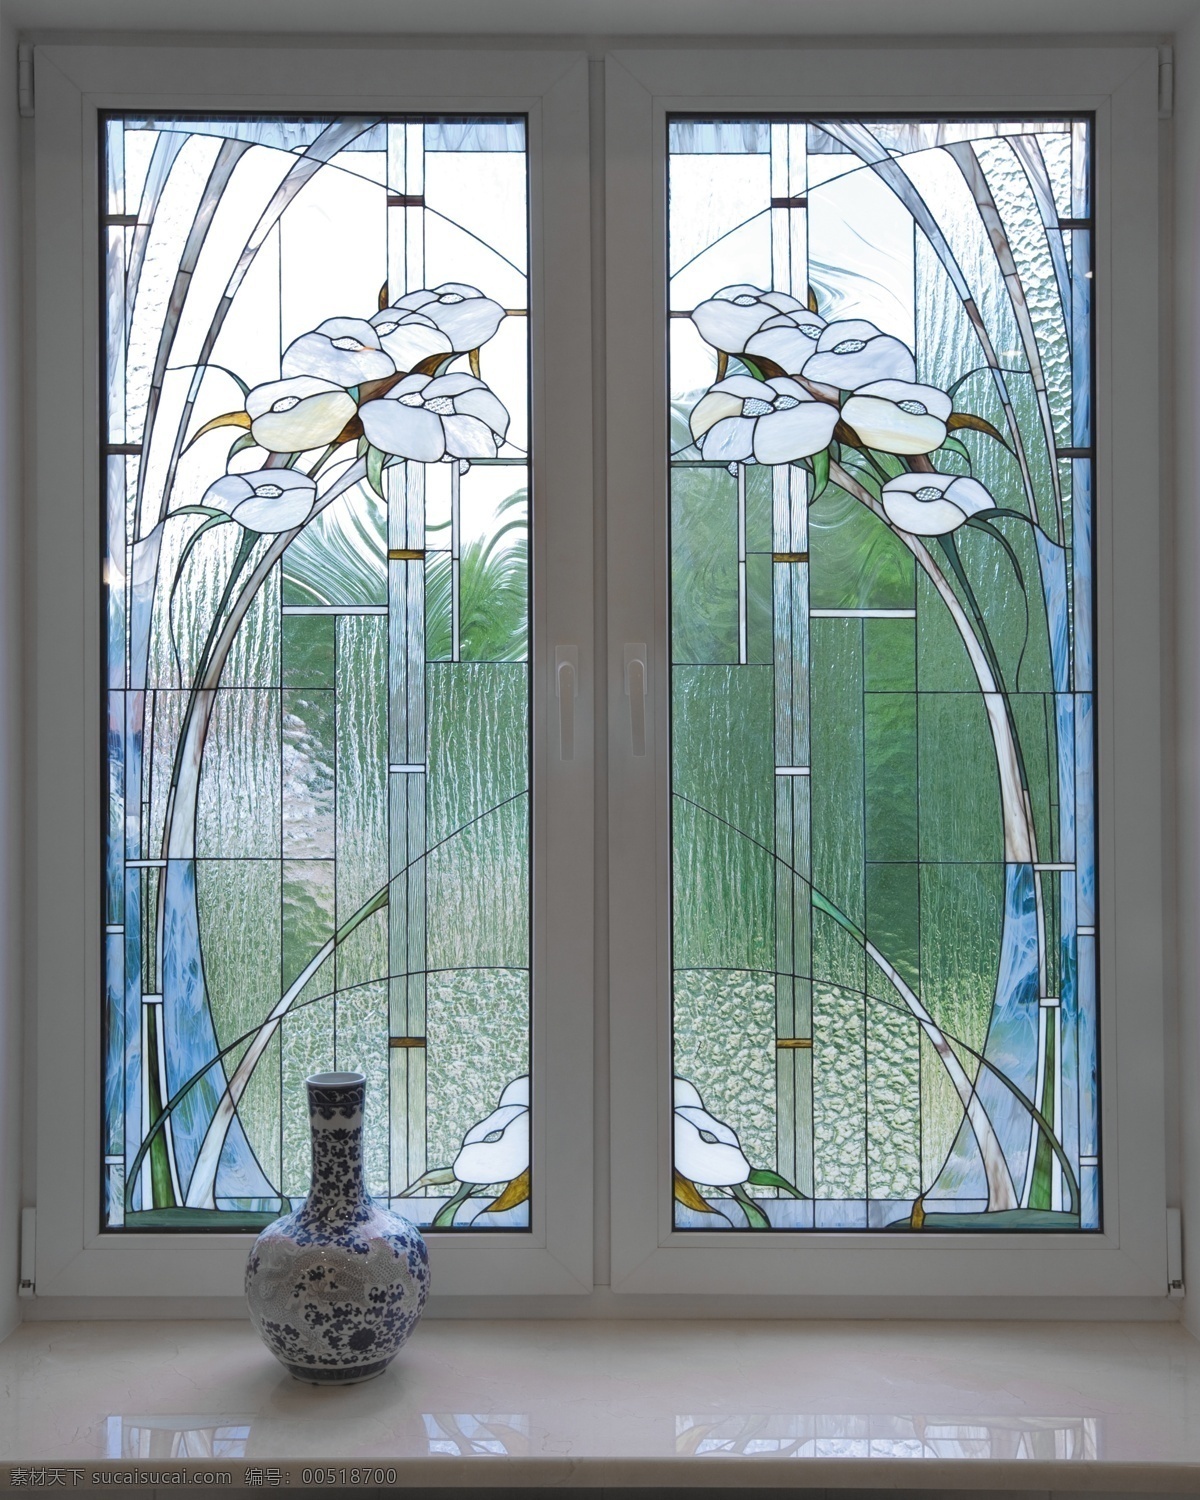 艺术玻璃 彩绘玻璃 镶嵌玻璃 窑烧玻璃 教堂玻璃 移门 装饰玻璃 传统文化 文化艺术